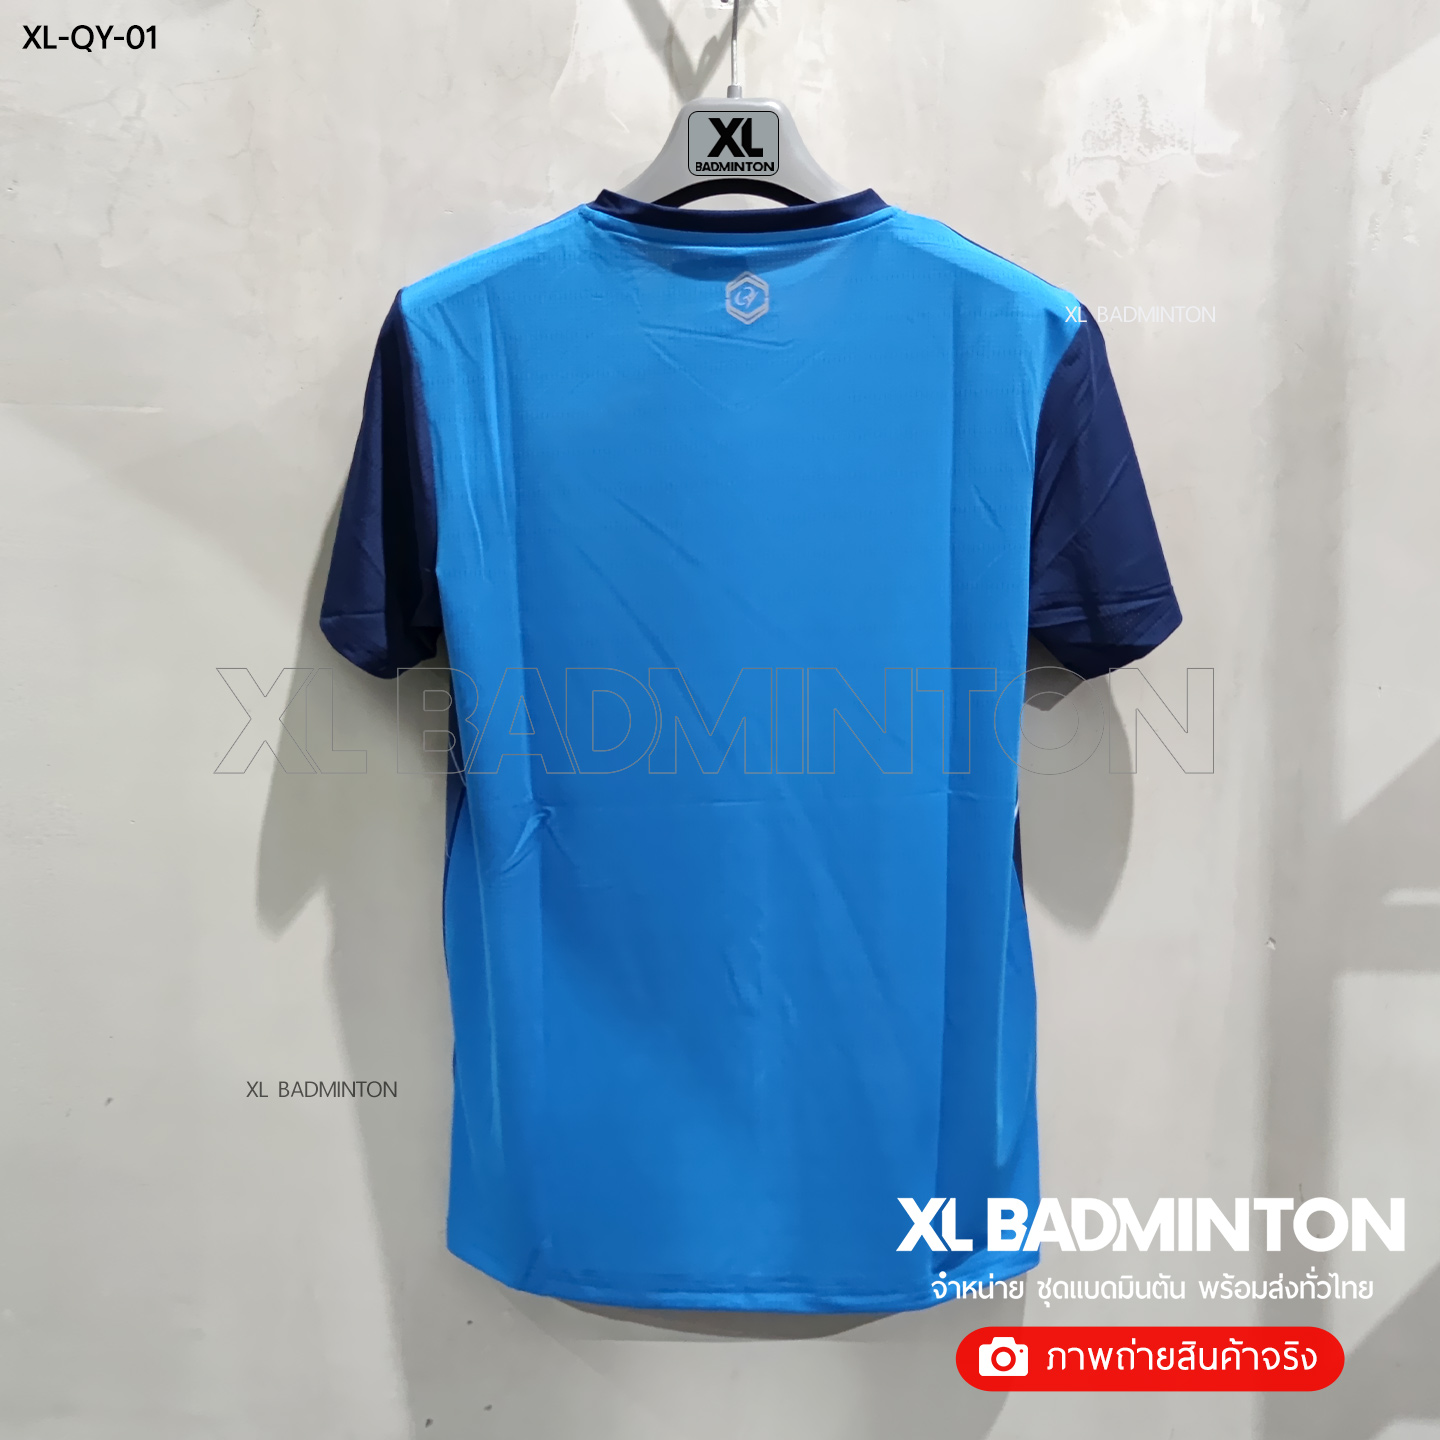 xl-qy-01-blue-3